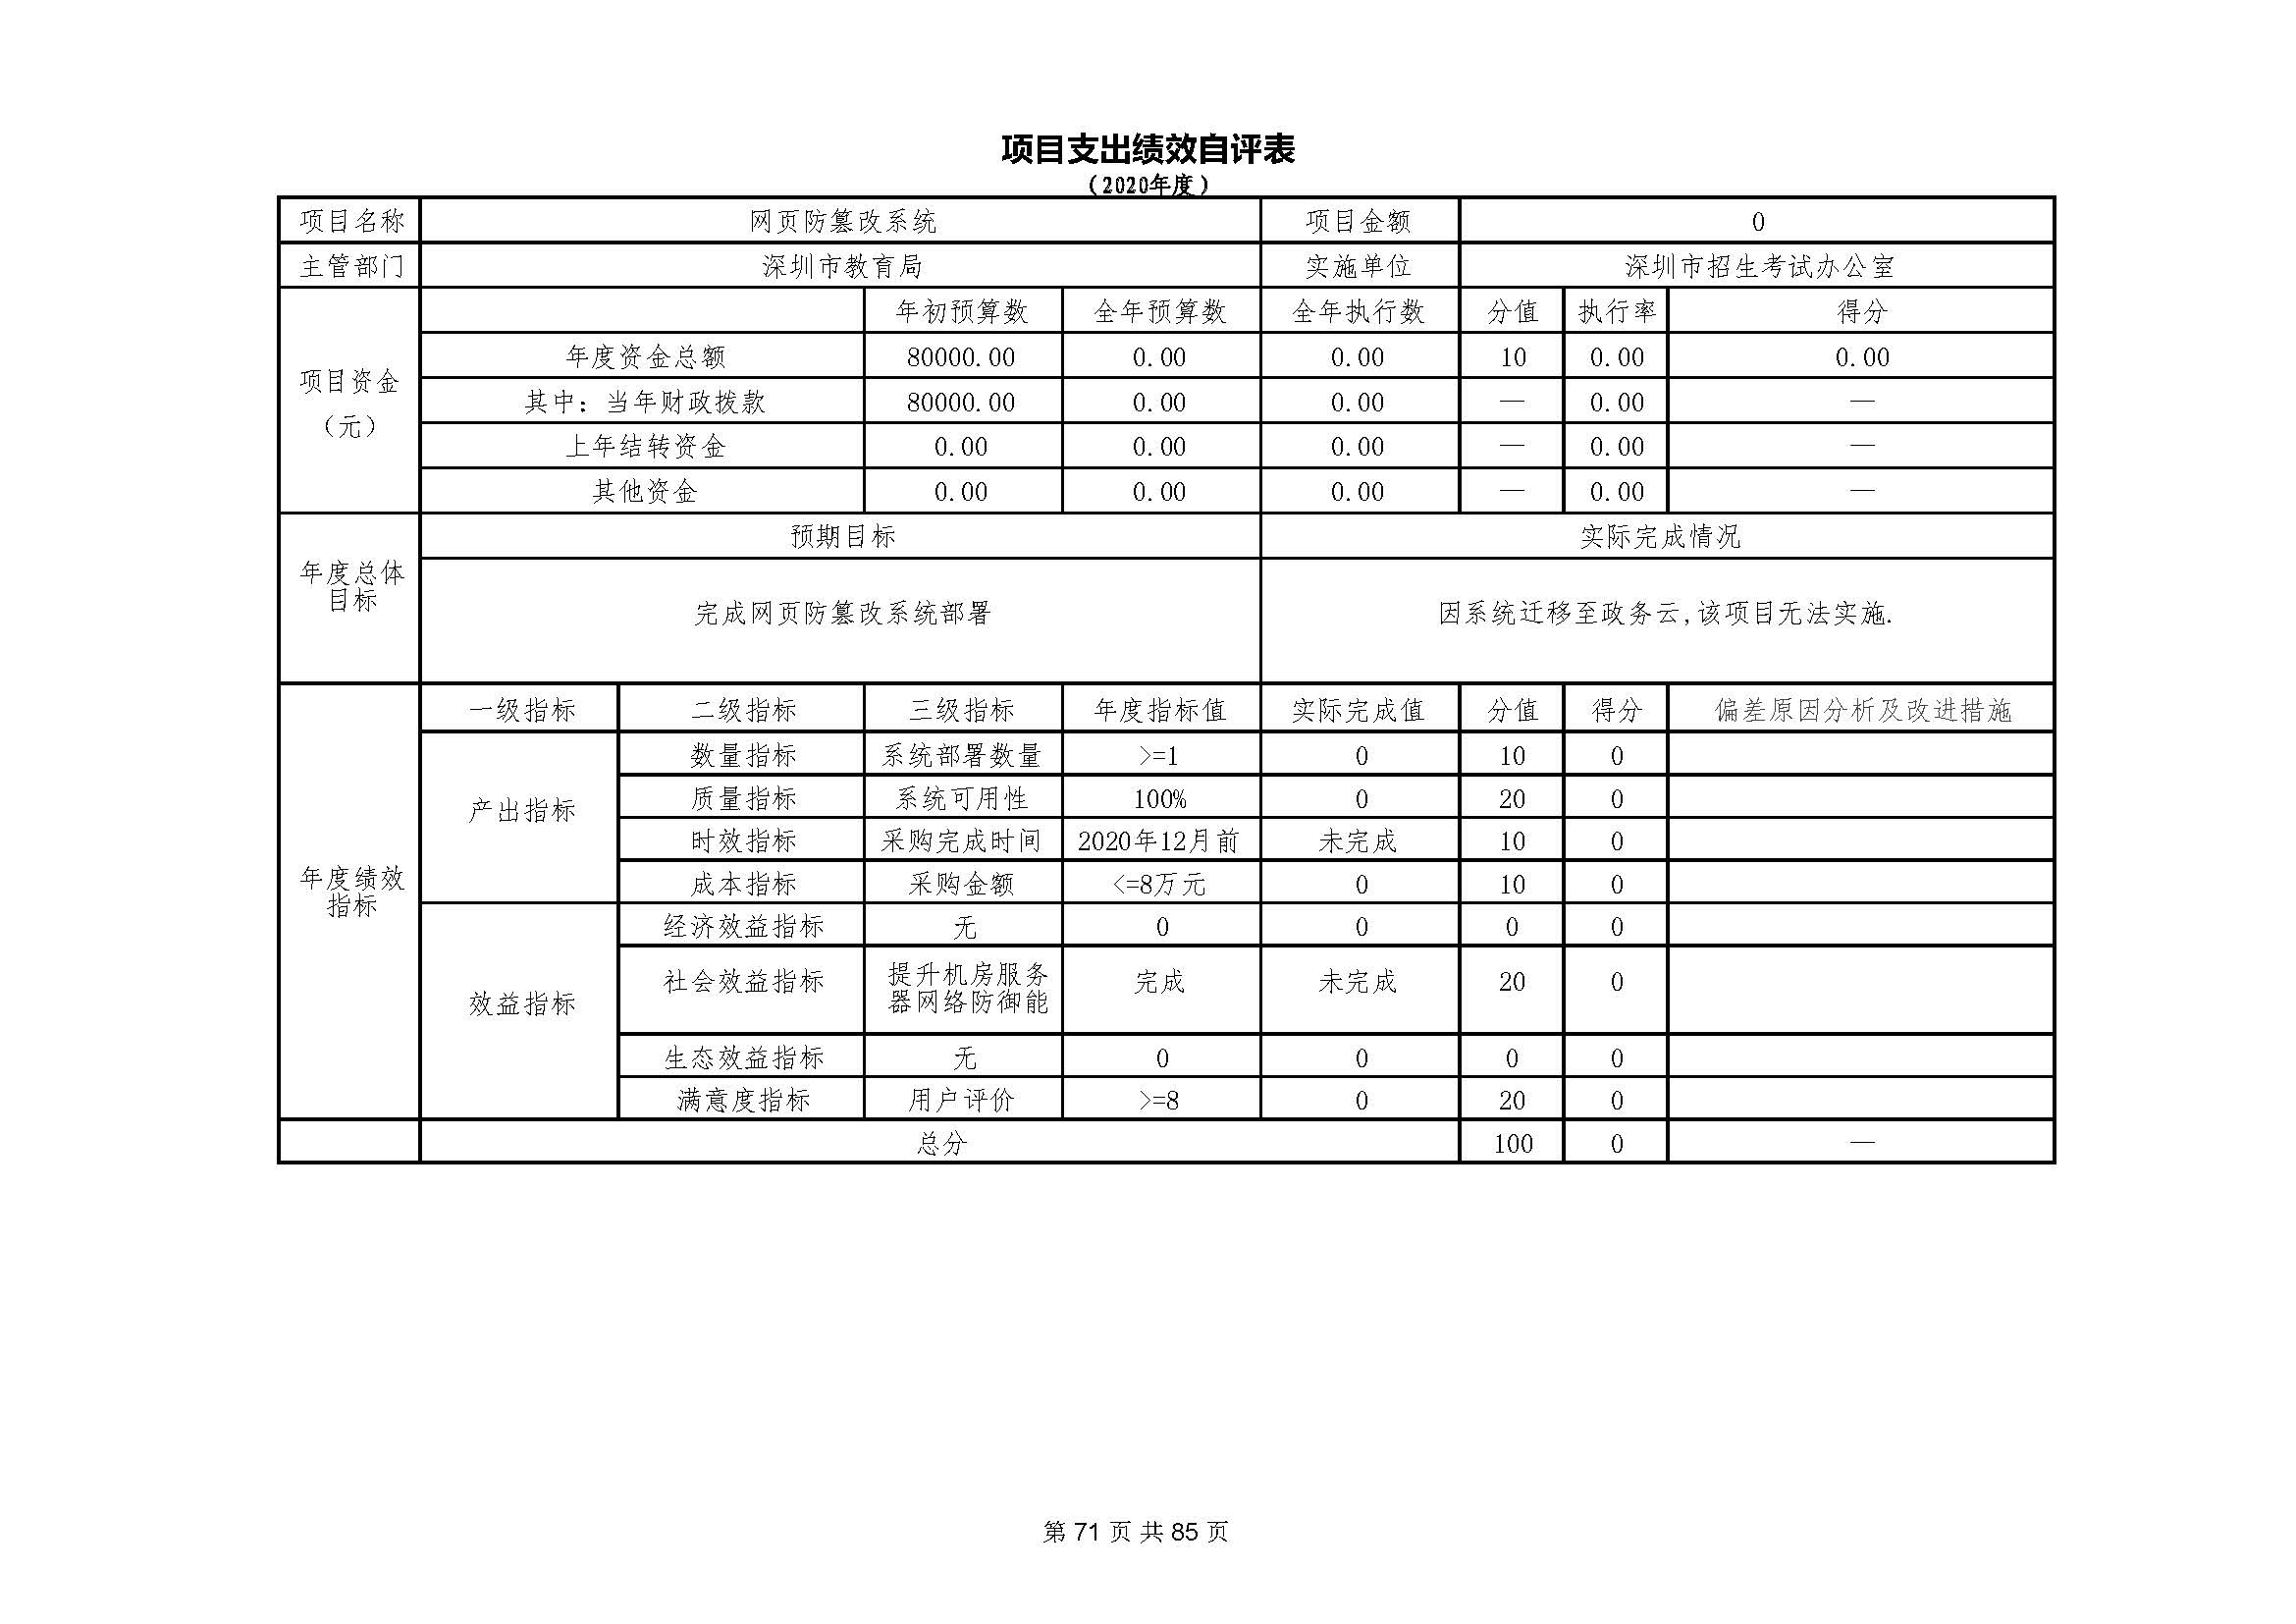 深圳市招生考试办公室2020年度部门决算_页面_72.jpg